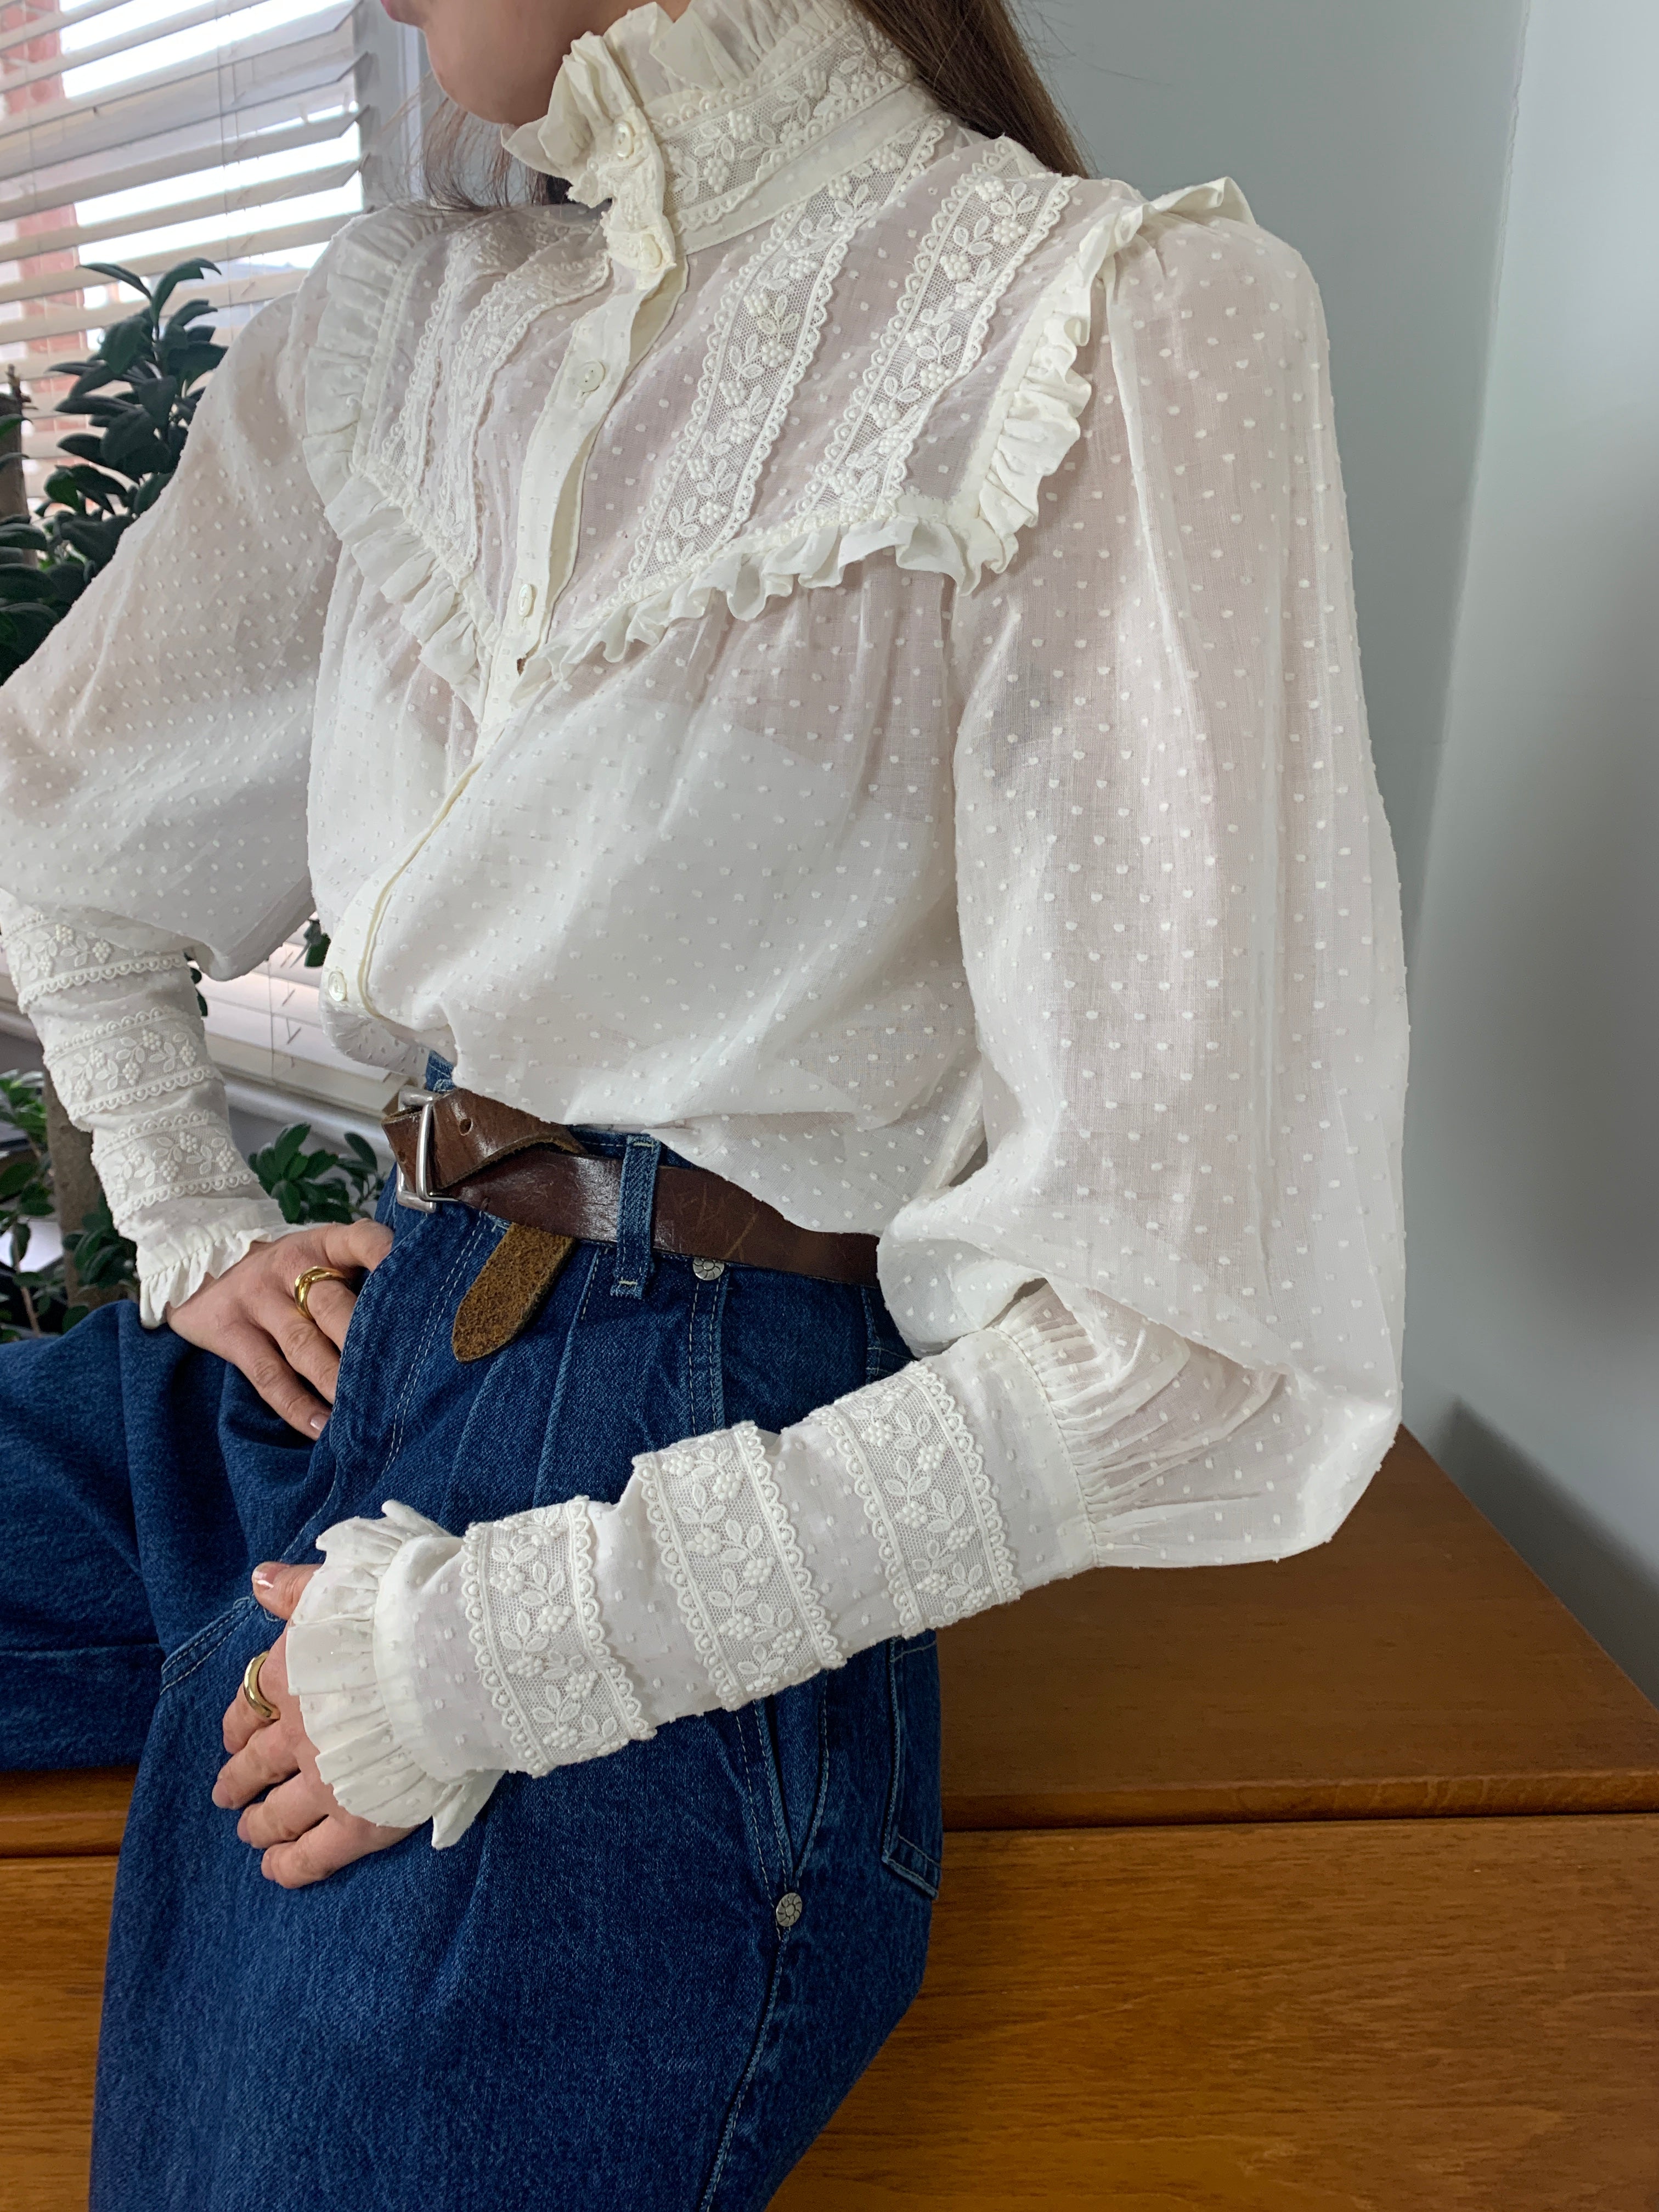 Vintage Laura Ashley Edwardian cotton lace blouse